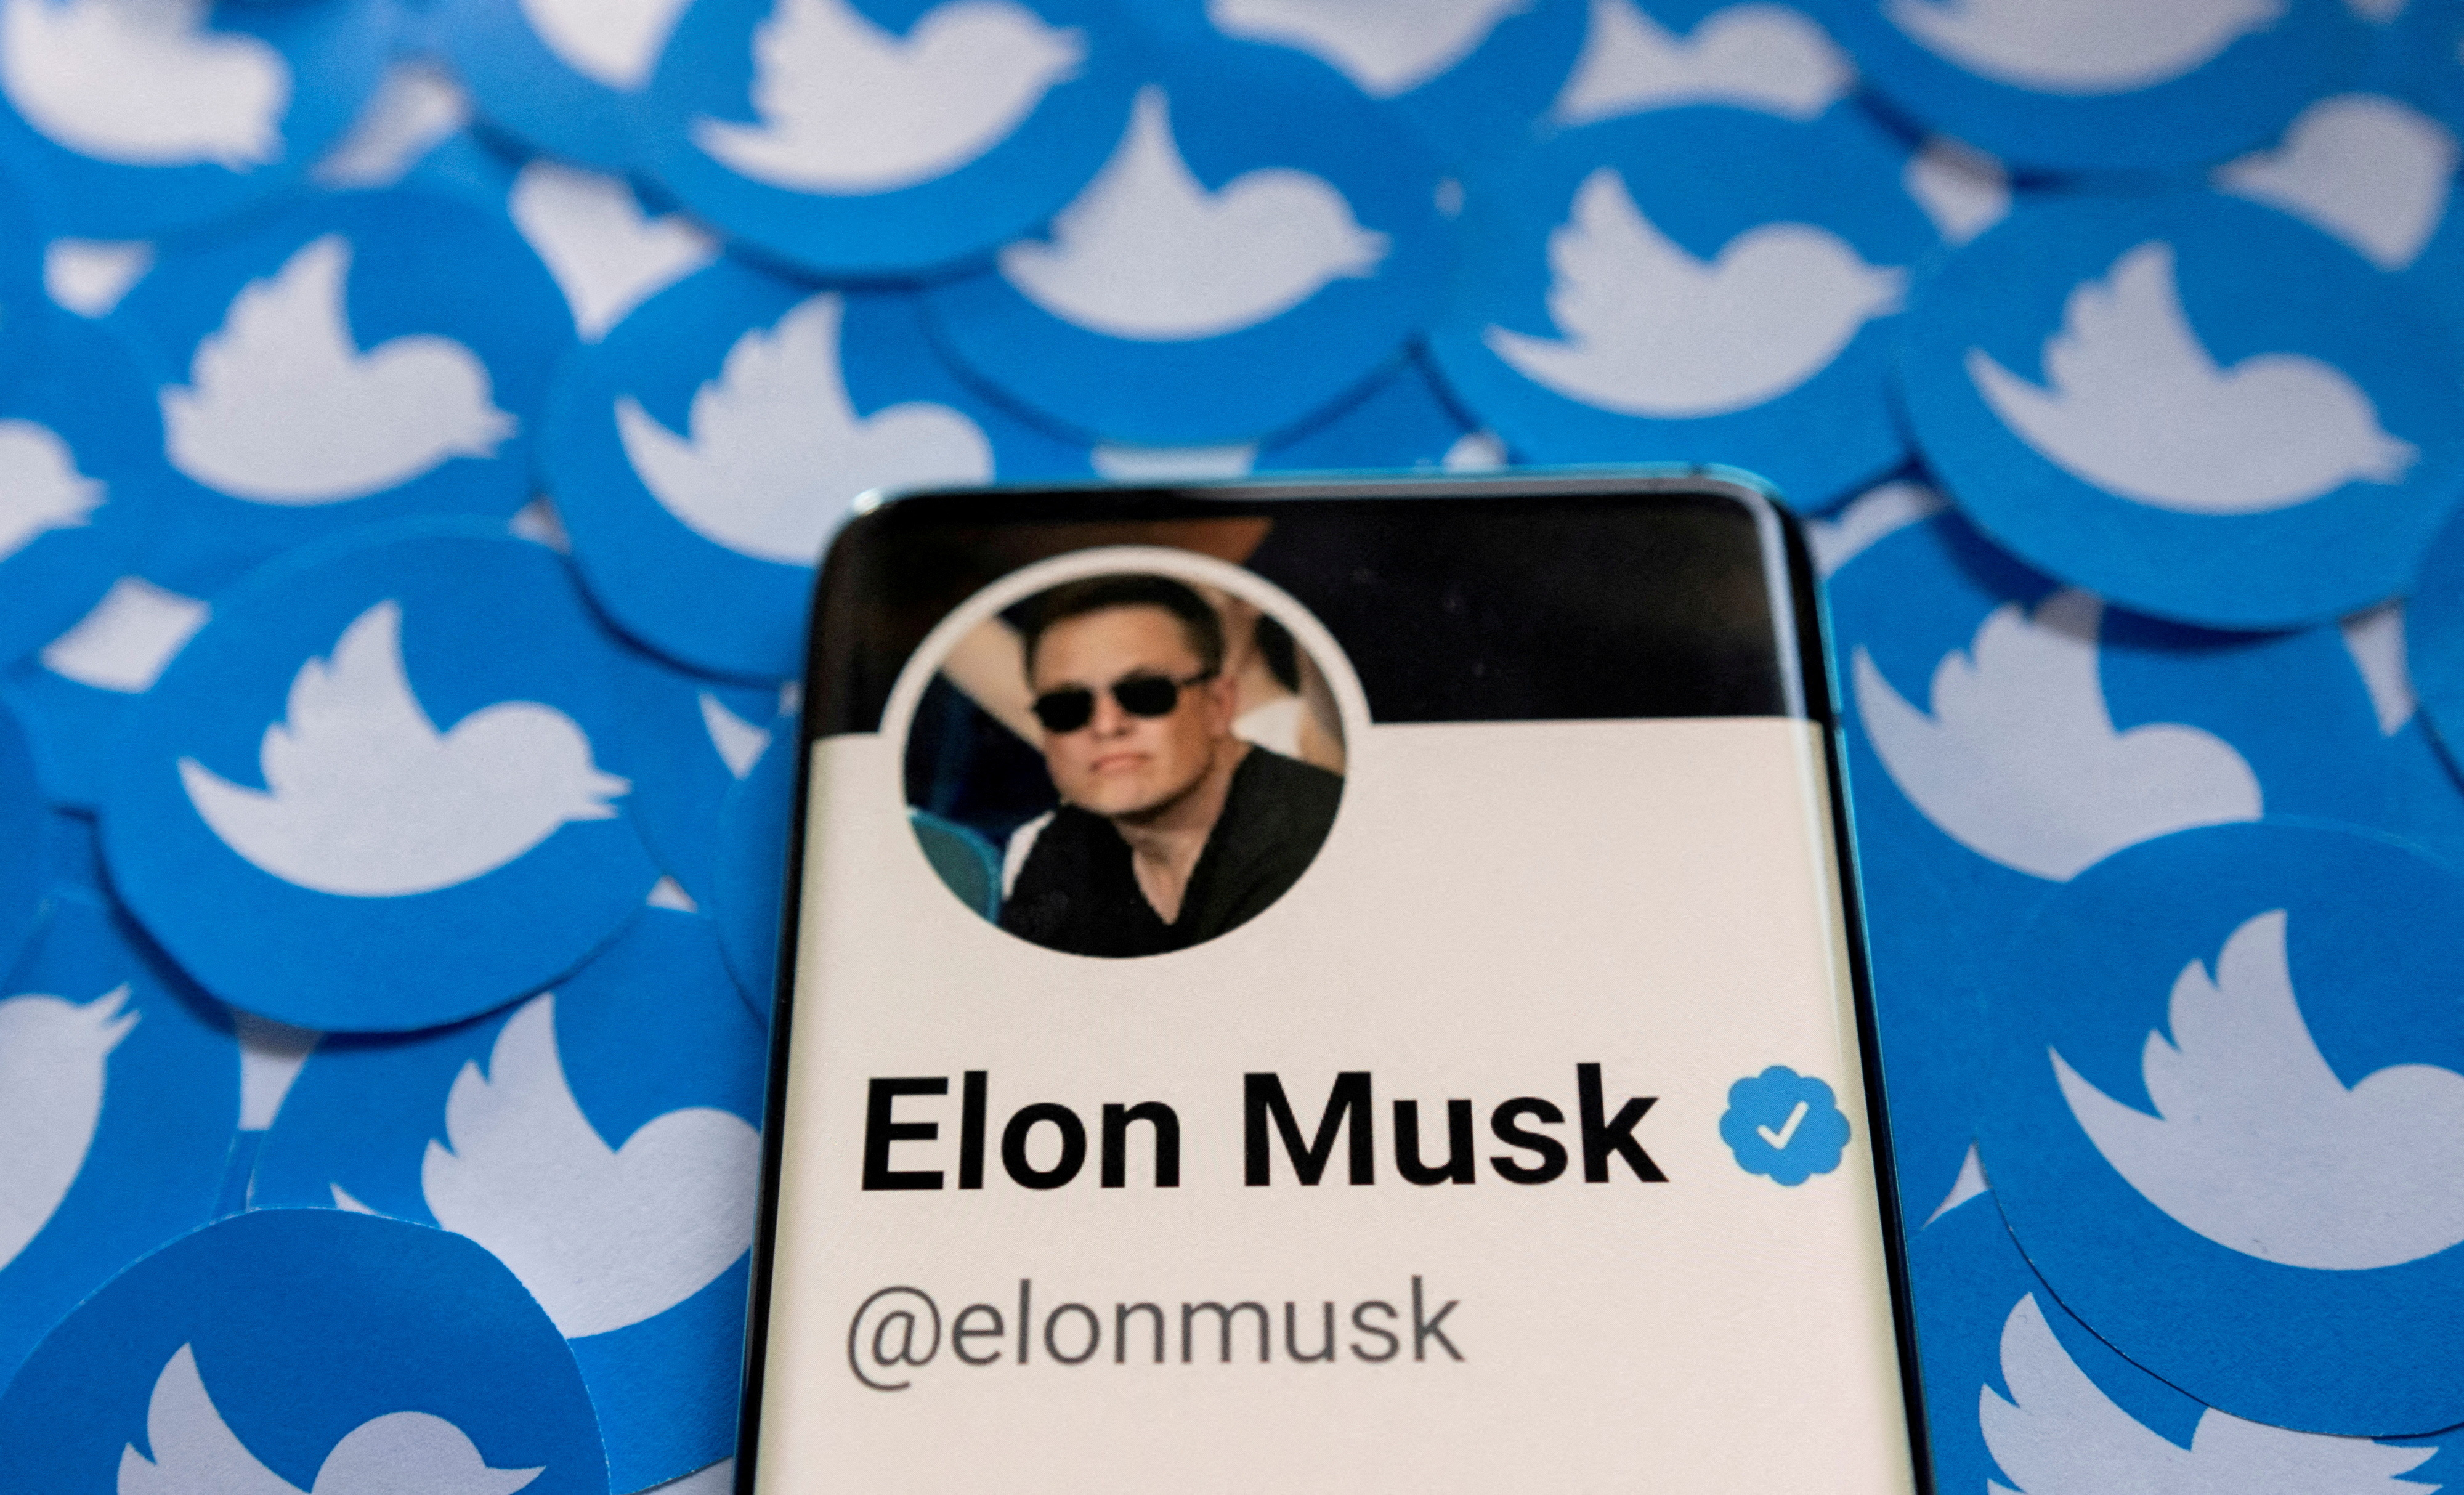 FILE PHOTO: Il profilo Twitter di Elon Musk appare su uno smartphone posizionato sui loghi Twitter stampati in questa illustrazione fotografica il 28 aprile 2022. REUTERS/Dado Ruvic/Illustration/File Photo